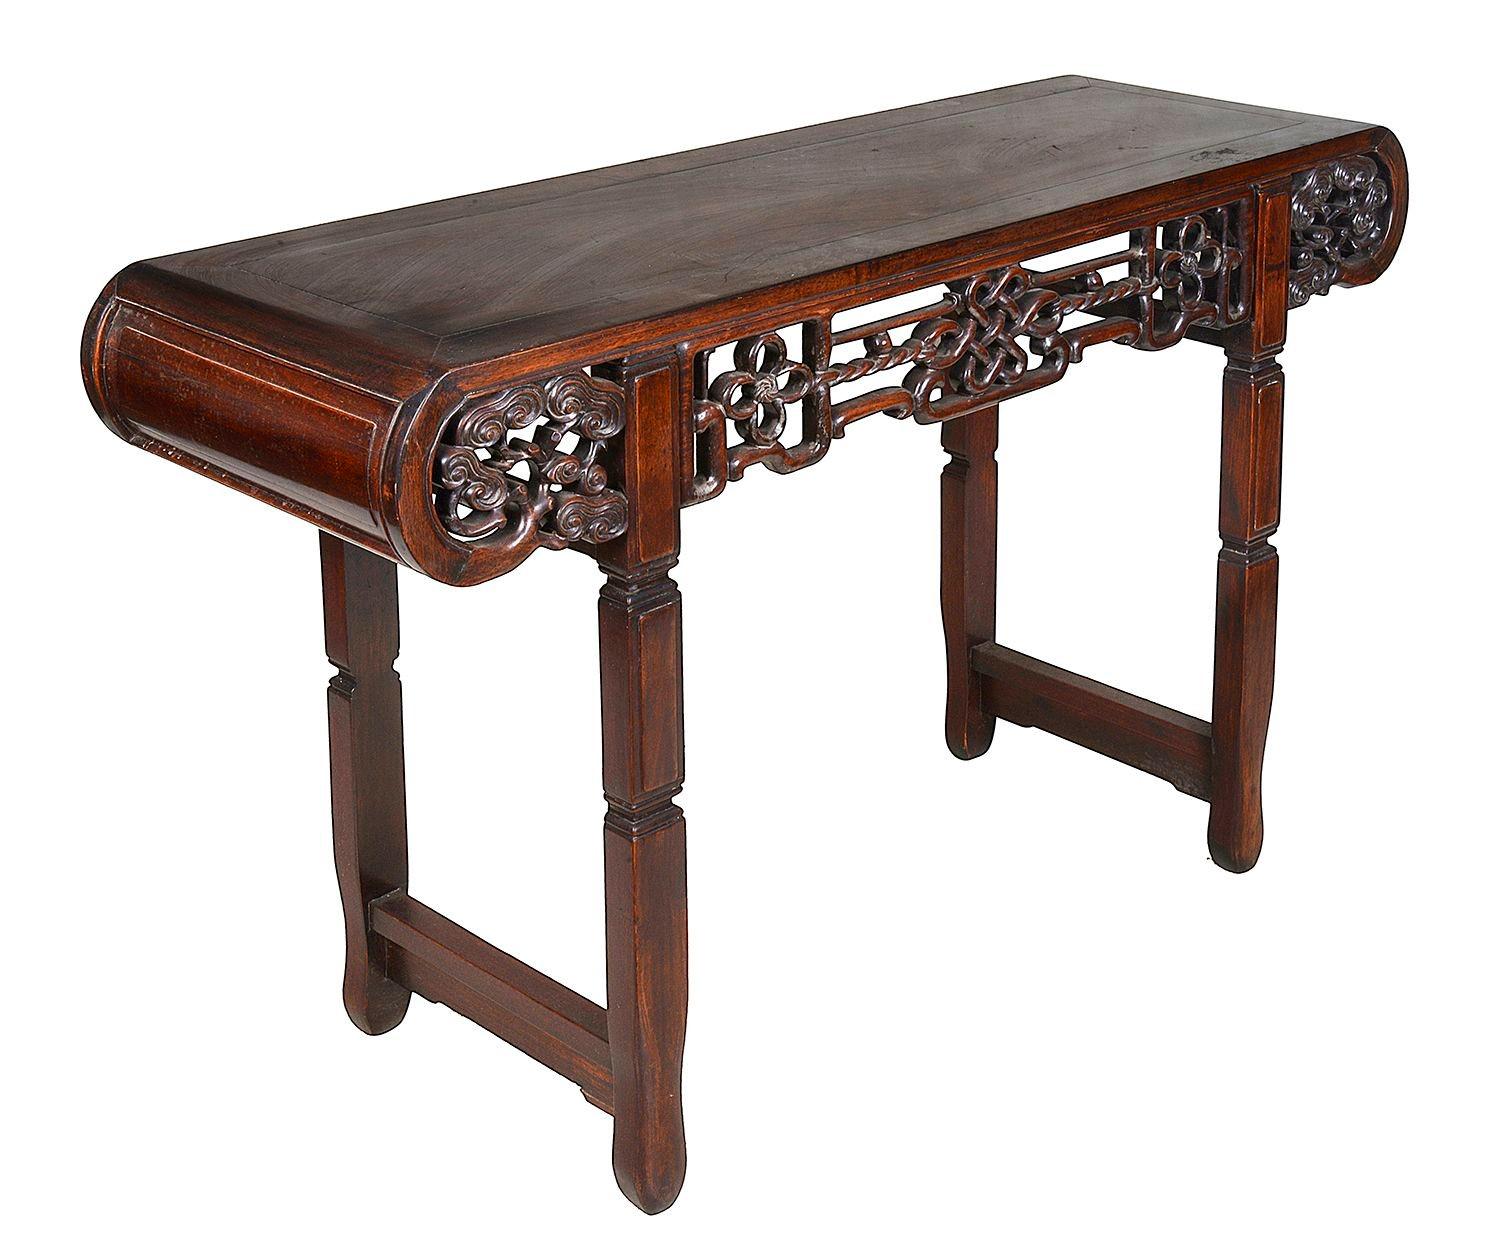 Eine sehr gute Qualität 19. Jahrhundert chinesischen Hartholz Alter Tisch, mit eingefügten Platten auf der Oberseite und scrolling Enden, handgeschnitzt und durchbrochene Band und scrolling Blattdekoration auf dem Fries, auf quadratischen Abschnitt